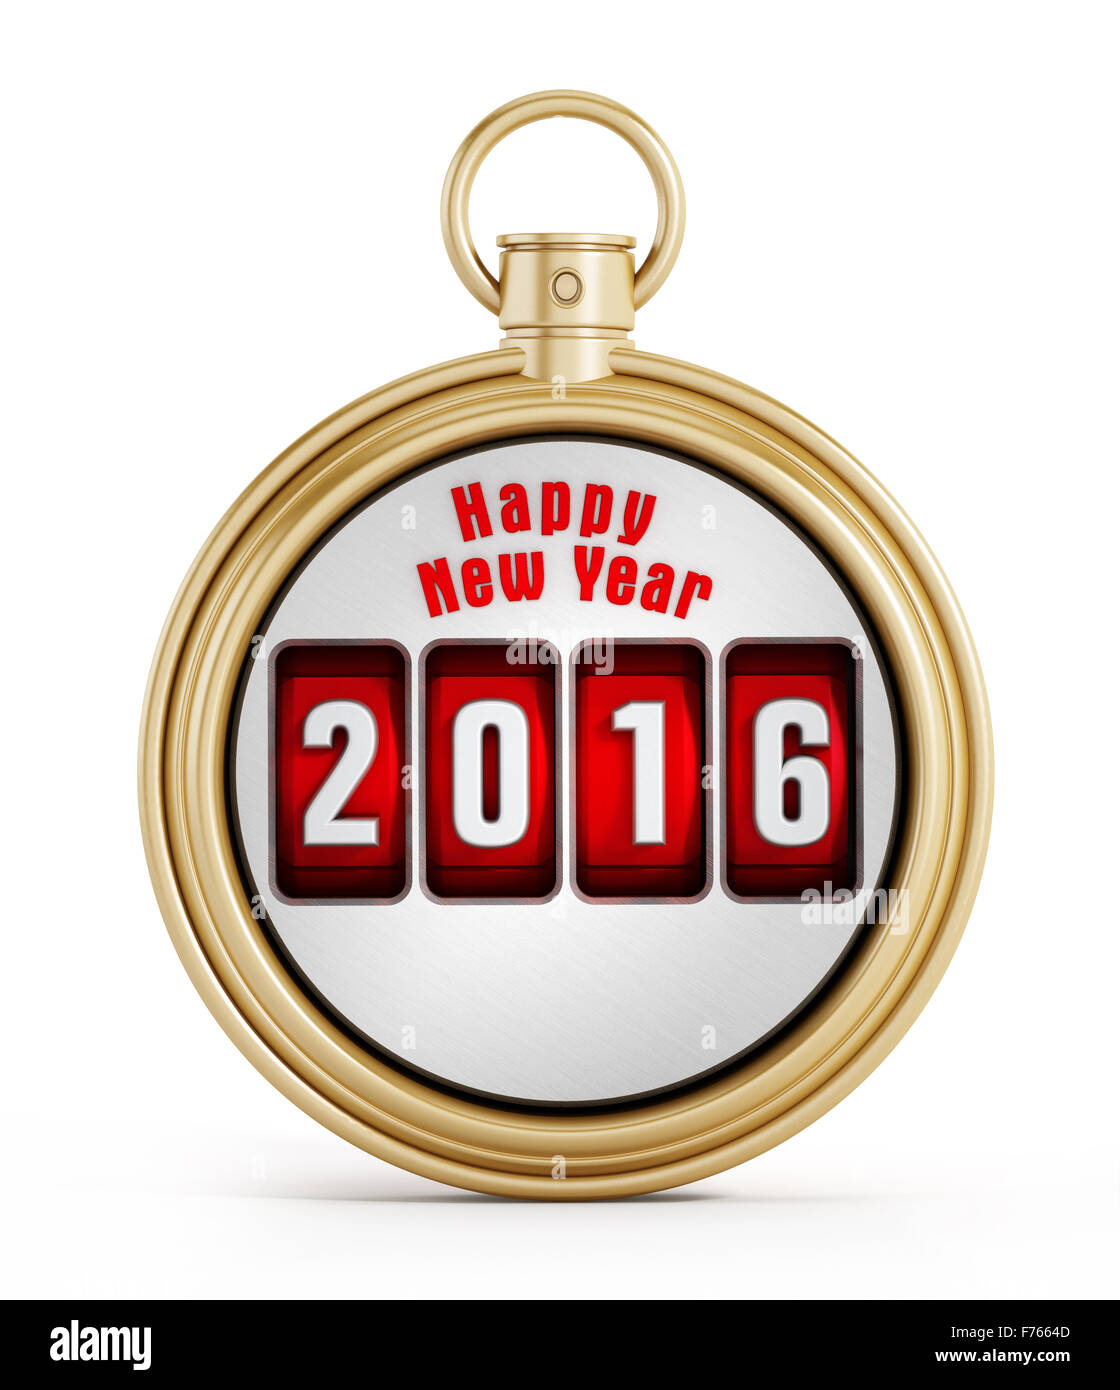 New year 2016 chronometer isolated on white background Stock Photo